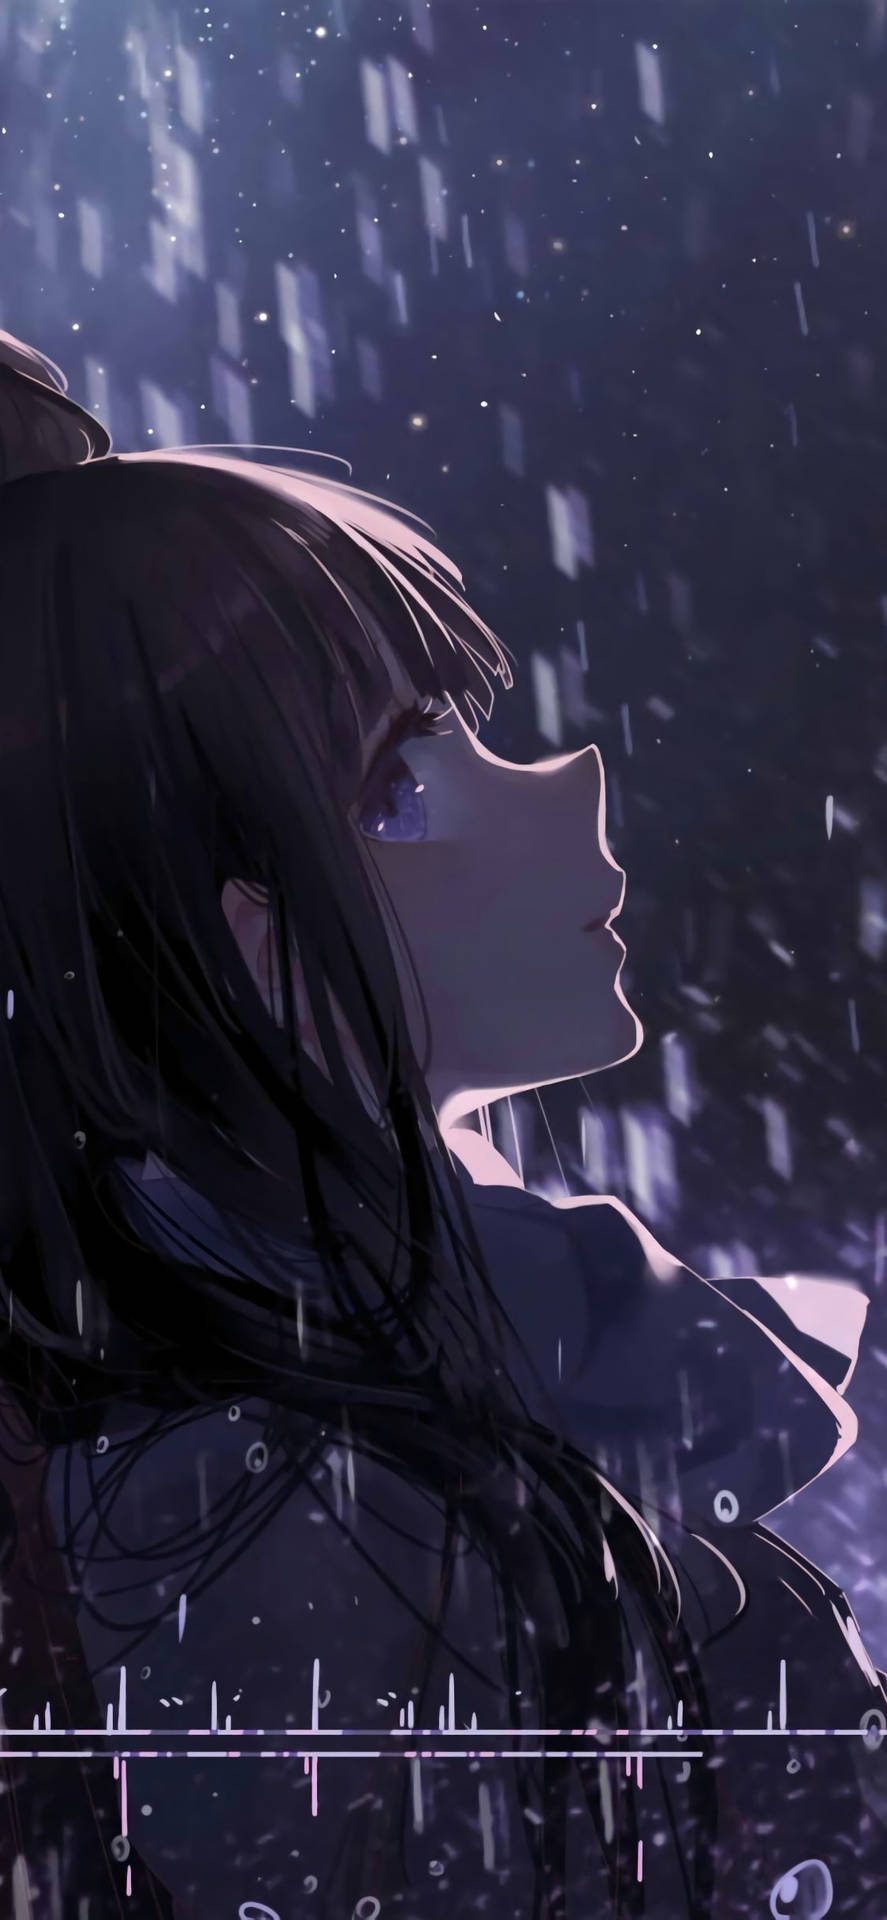 Download Sad Anime Girl Pouring Rain Wallpaper | Wallpapers.com